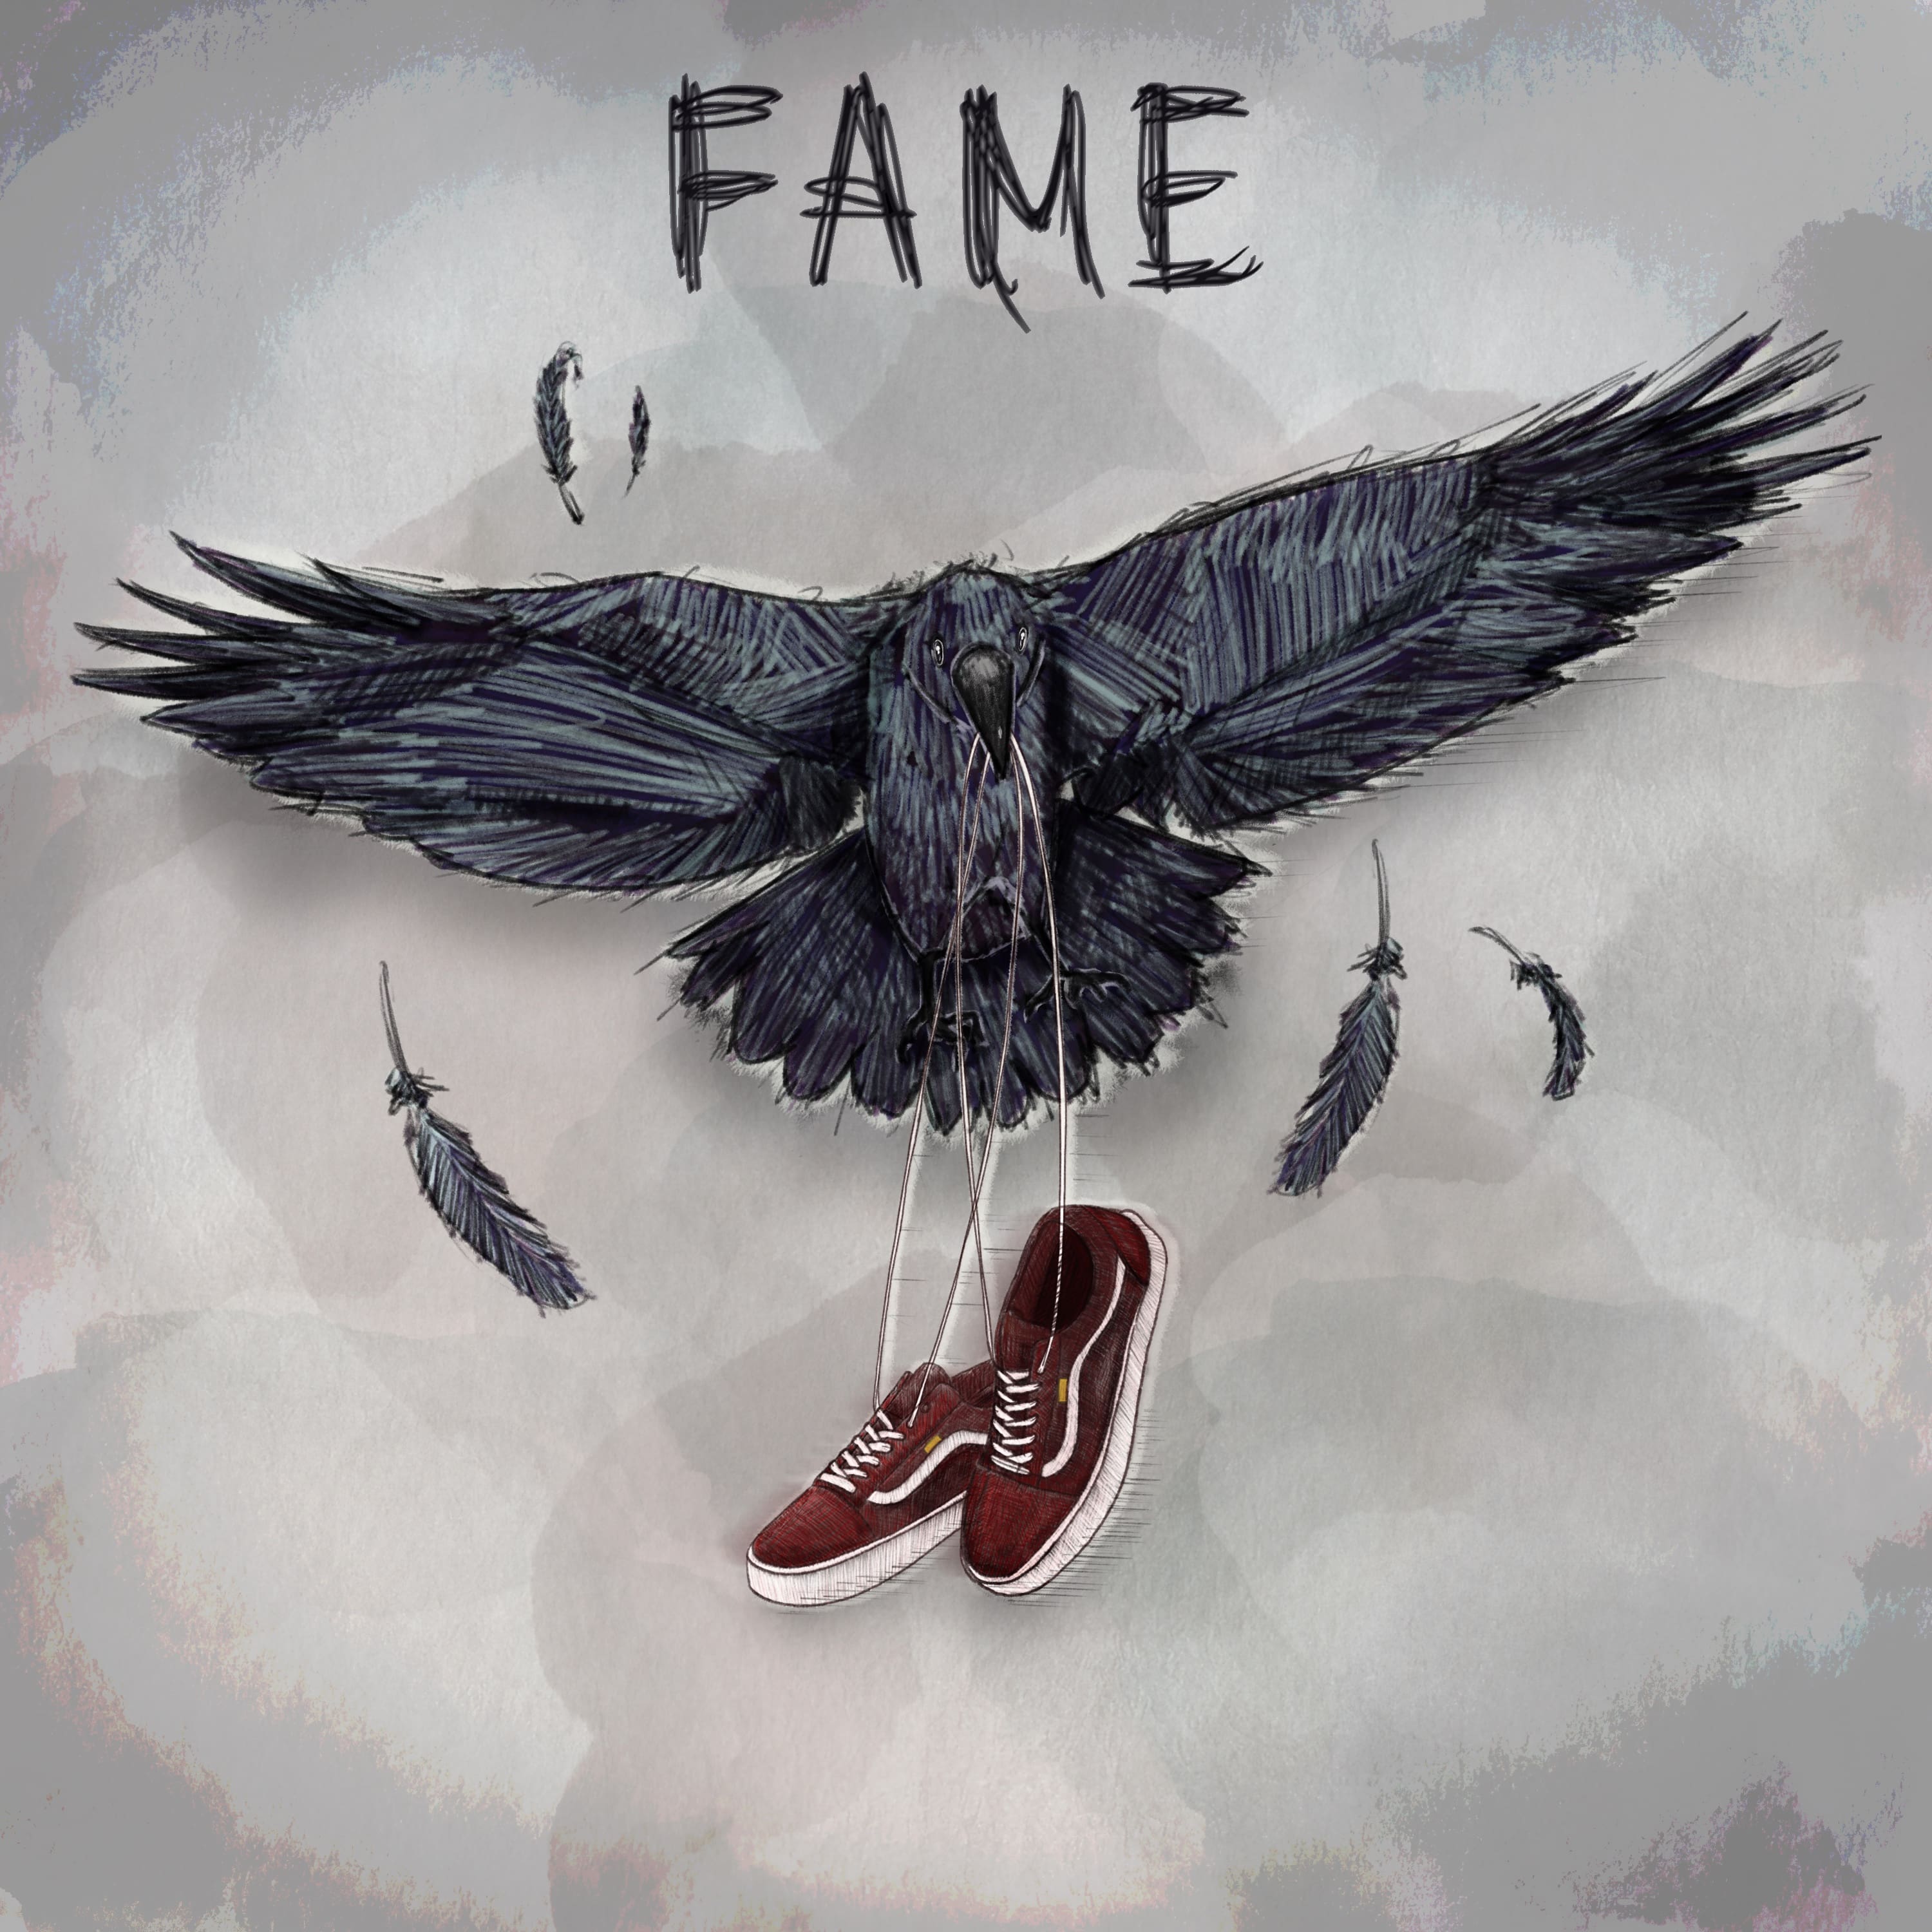 Fame, il nuovo ep degli Urbania [Recensione] 9